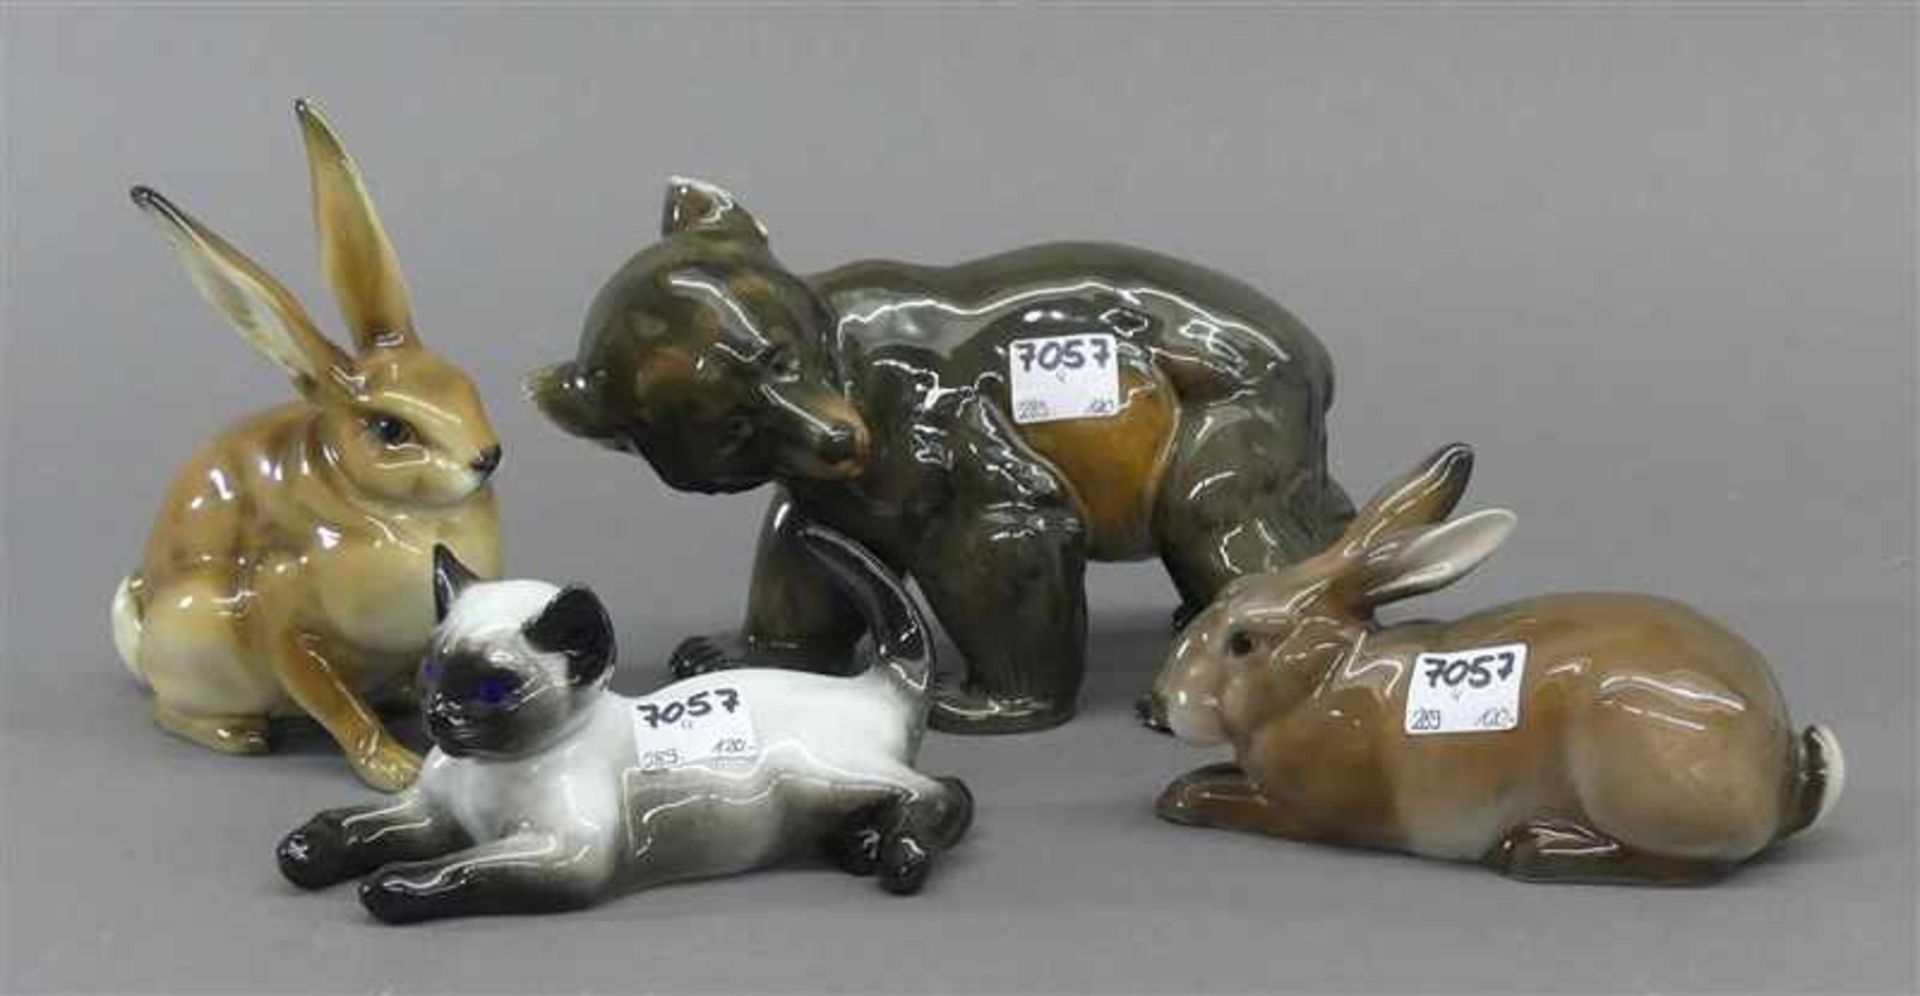 4 PorzellanfigurenTierdarstellungen, 2 Hasen, Bär, Katze (beschädigt), um 1950, 3 x Rosenthal, 1 x